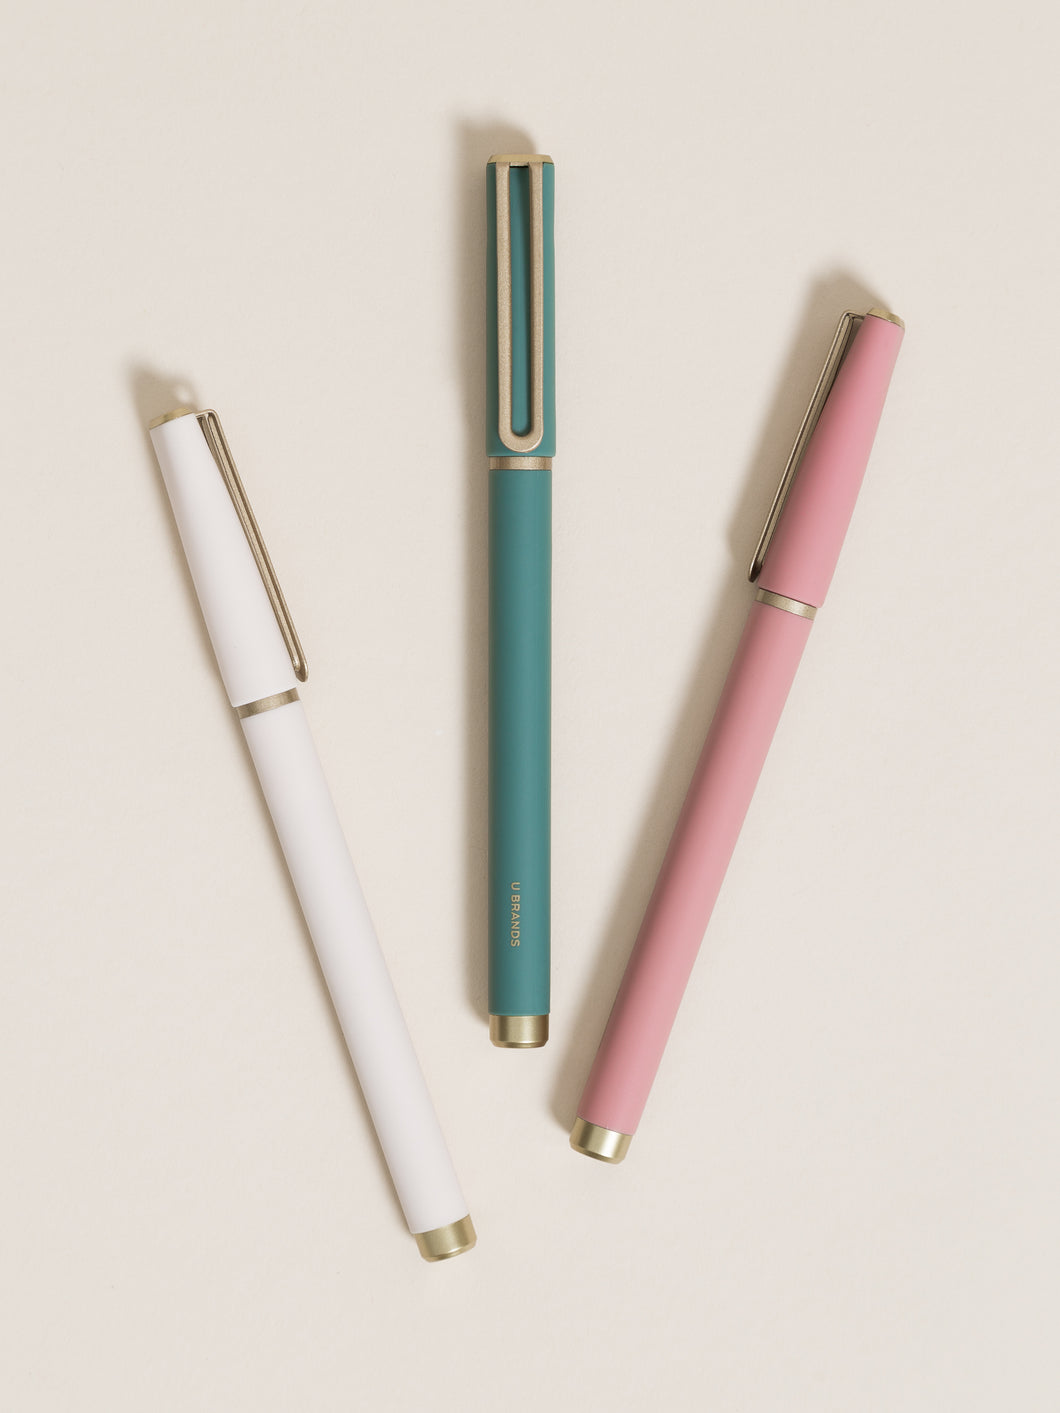  U Brands Soft Touch Catalina Felt Tip Pen - Soft Dye